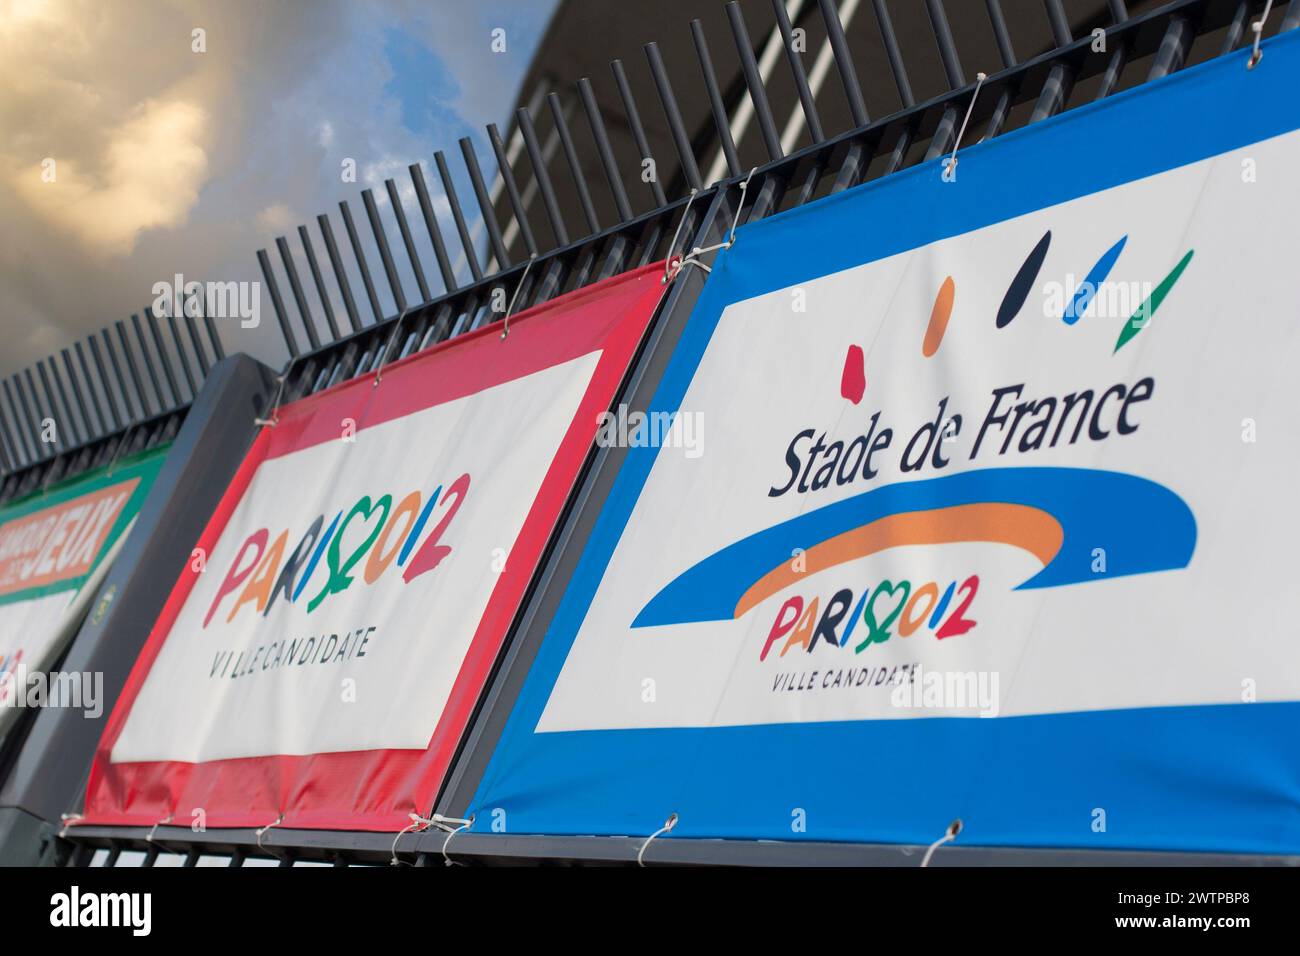 Anuncio de Paris2012 en el stade de France en Saint Denis en 2005. Como se conoce París perdió y los Juegos Olímpicos de 2012 tuvieron lugar en Londres. París tenía que hacerlo Foto de stock